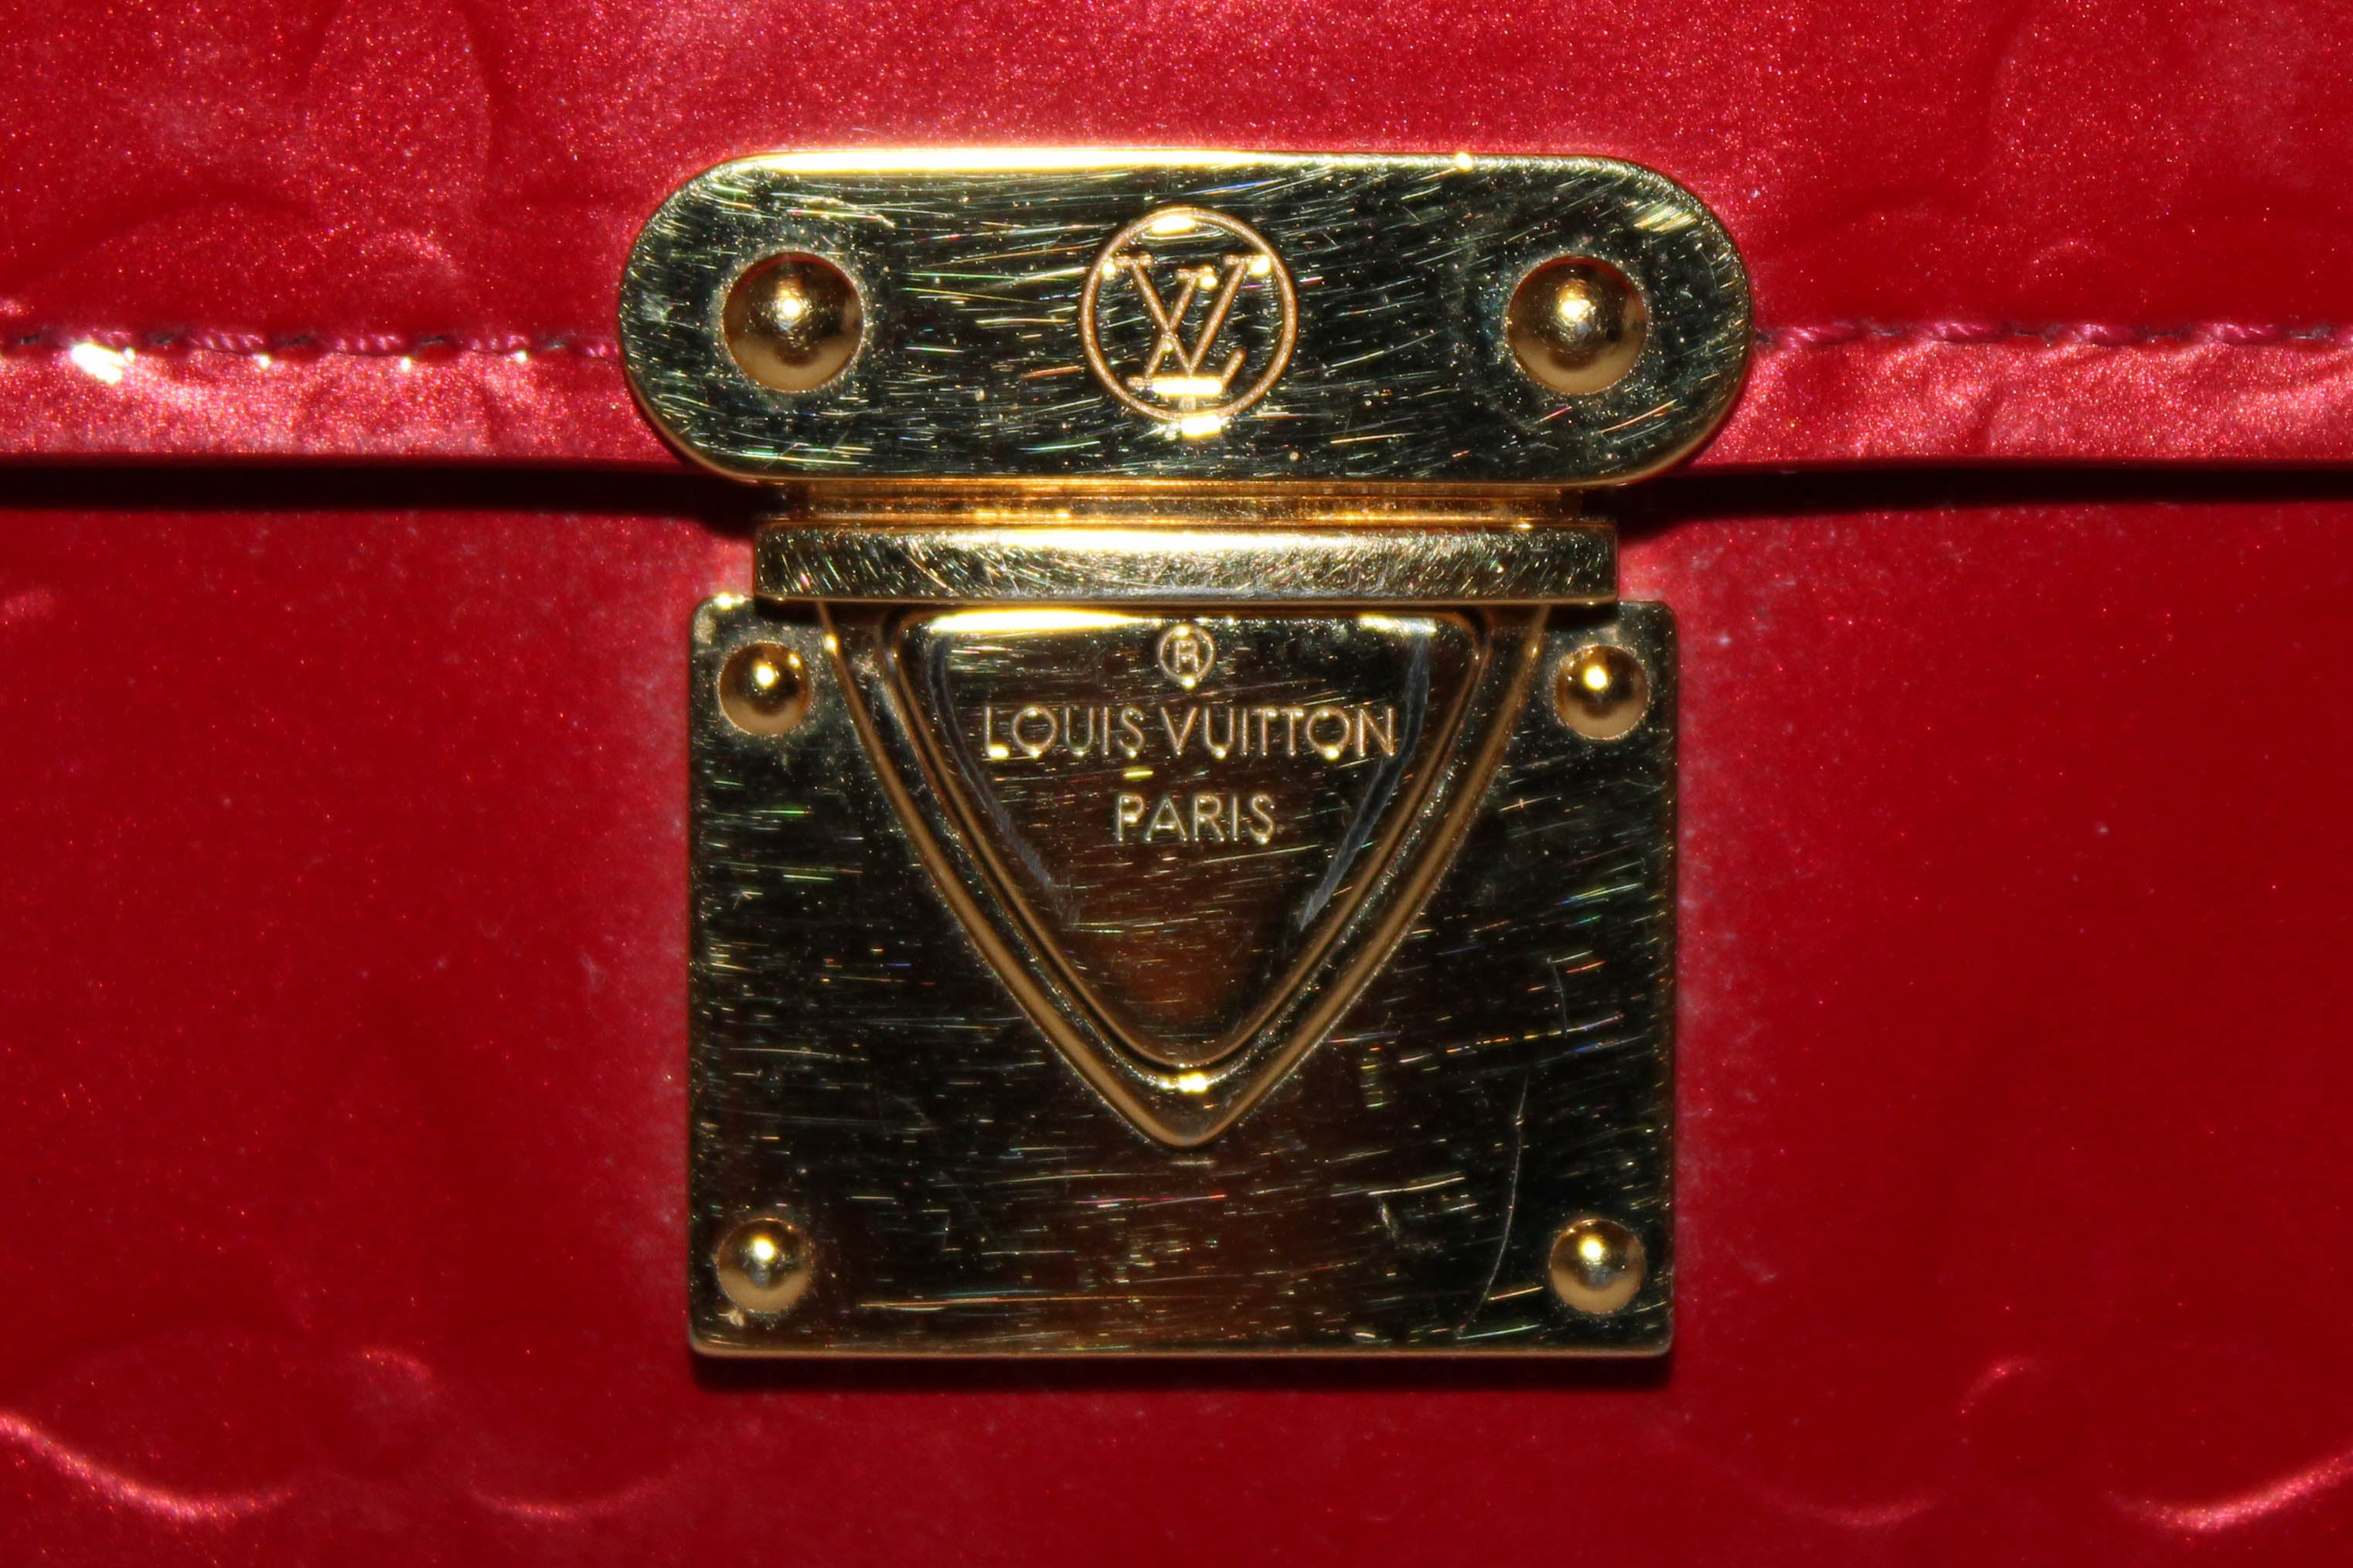 LOUIS VUITTON Koala Monogram Red Vernis Wallet